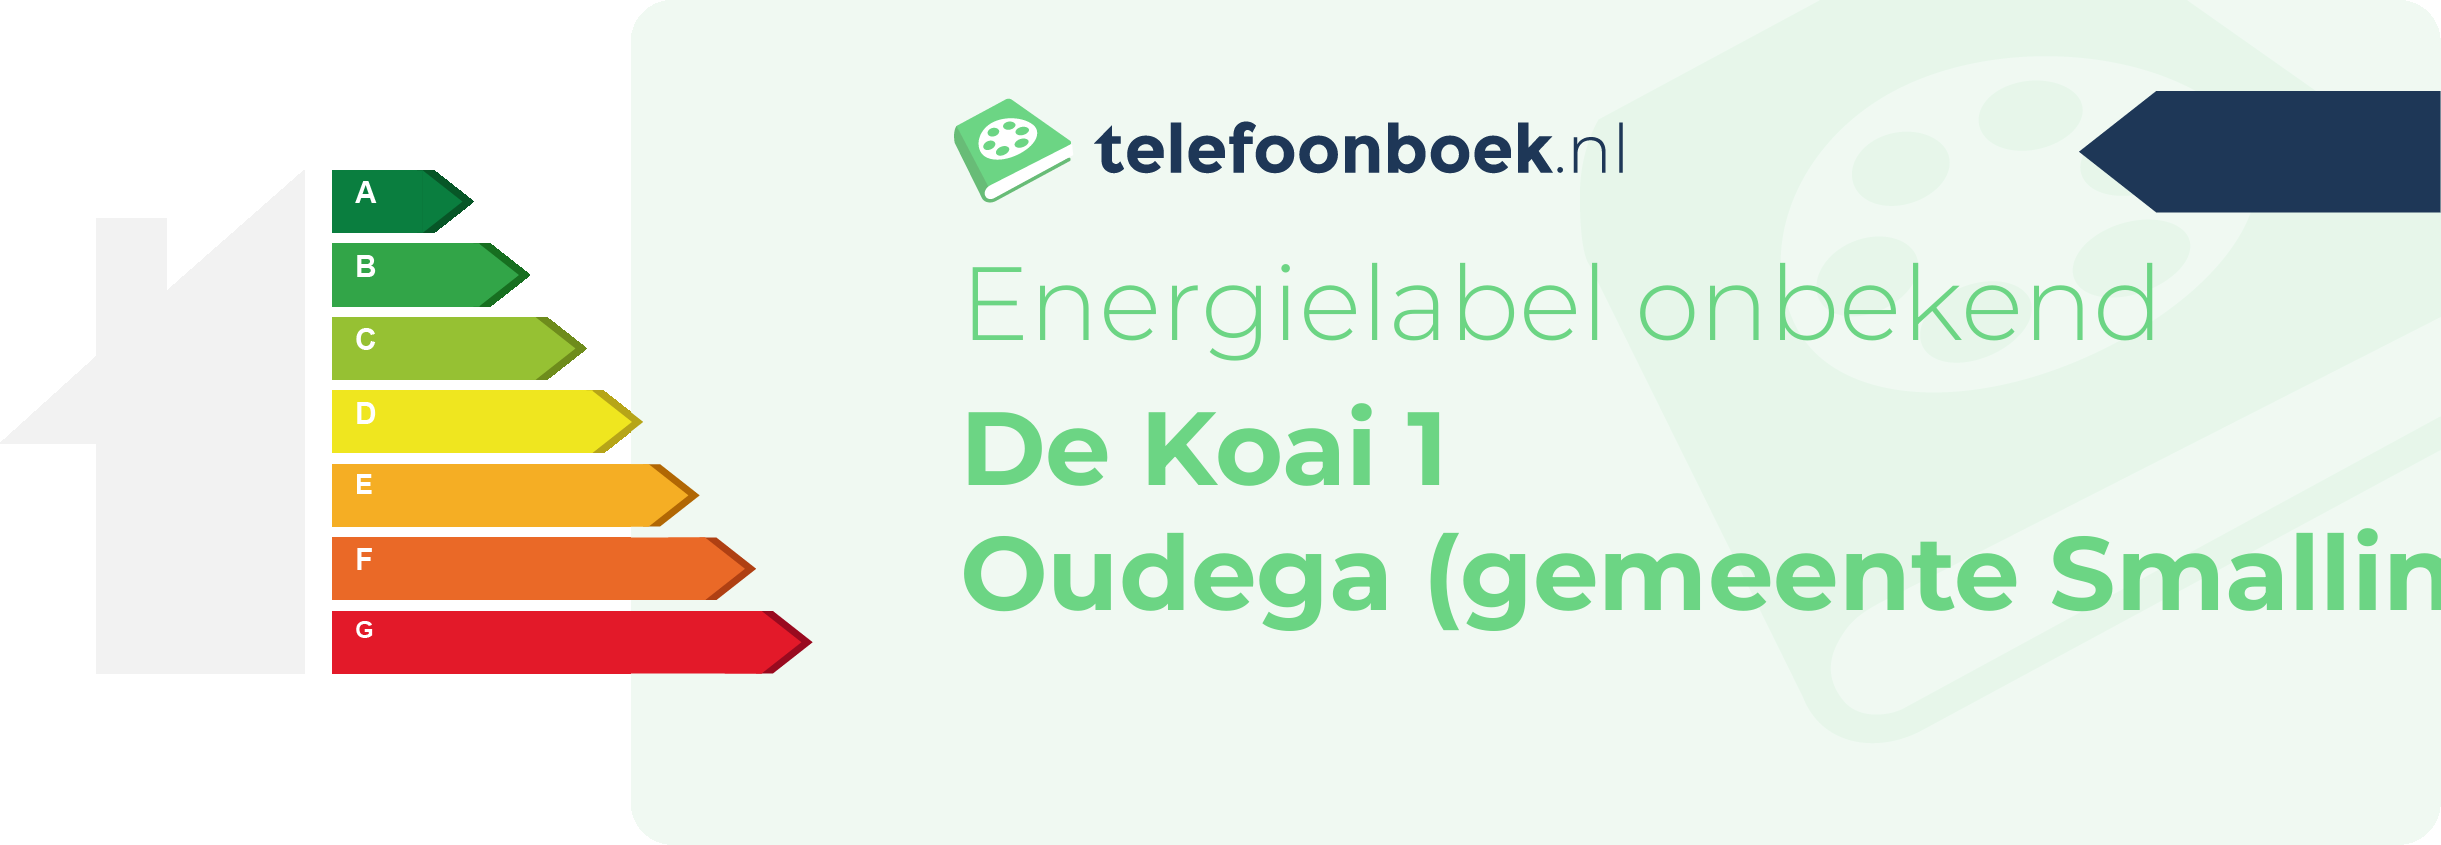 Energielabel De Koai 1 Oudega (gemeente Smallingerland Friesland)